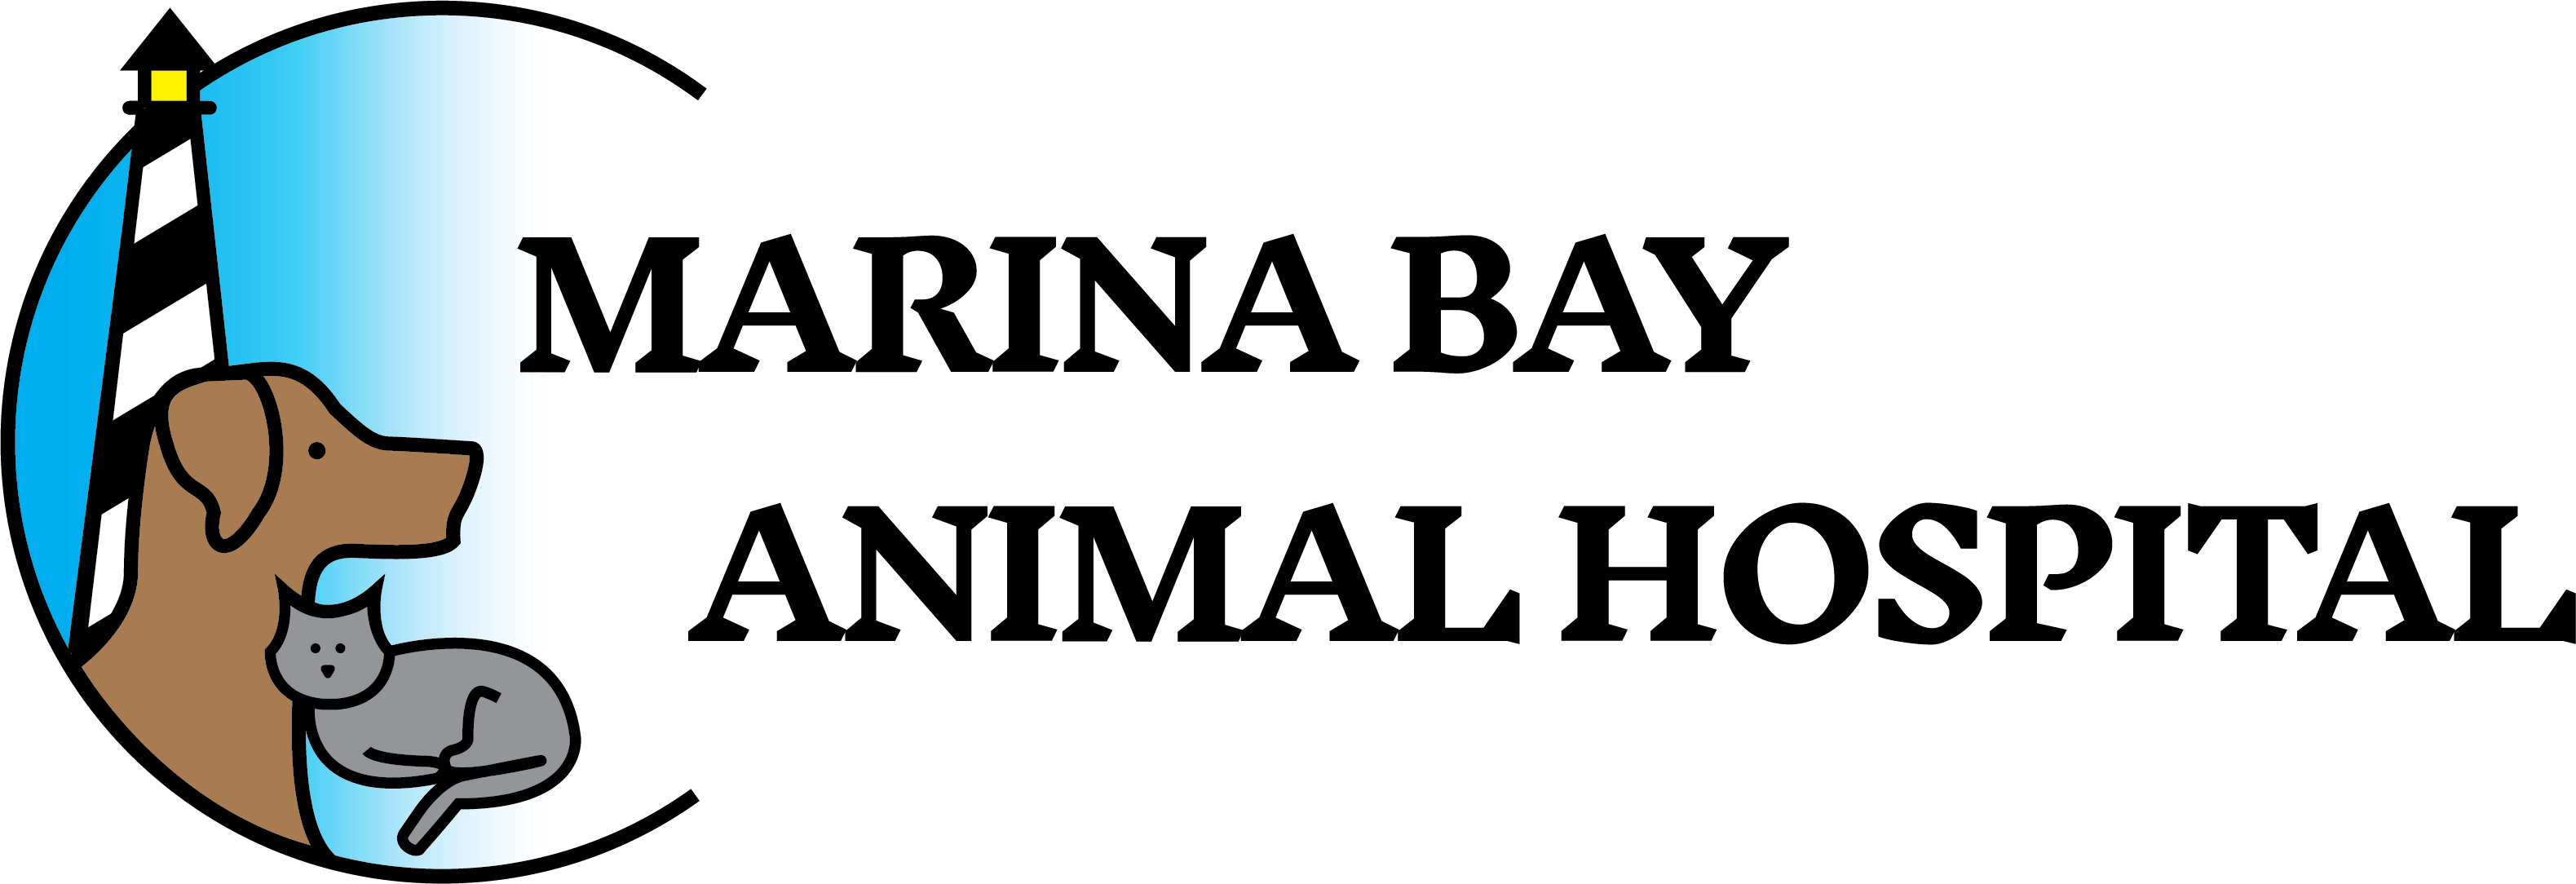 Marina Bay Animal Hospital Logo